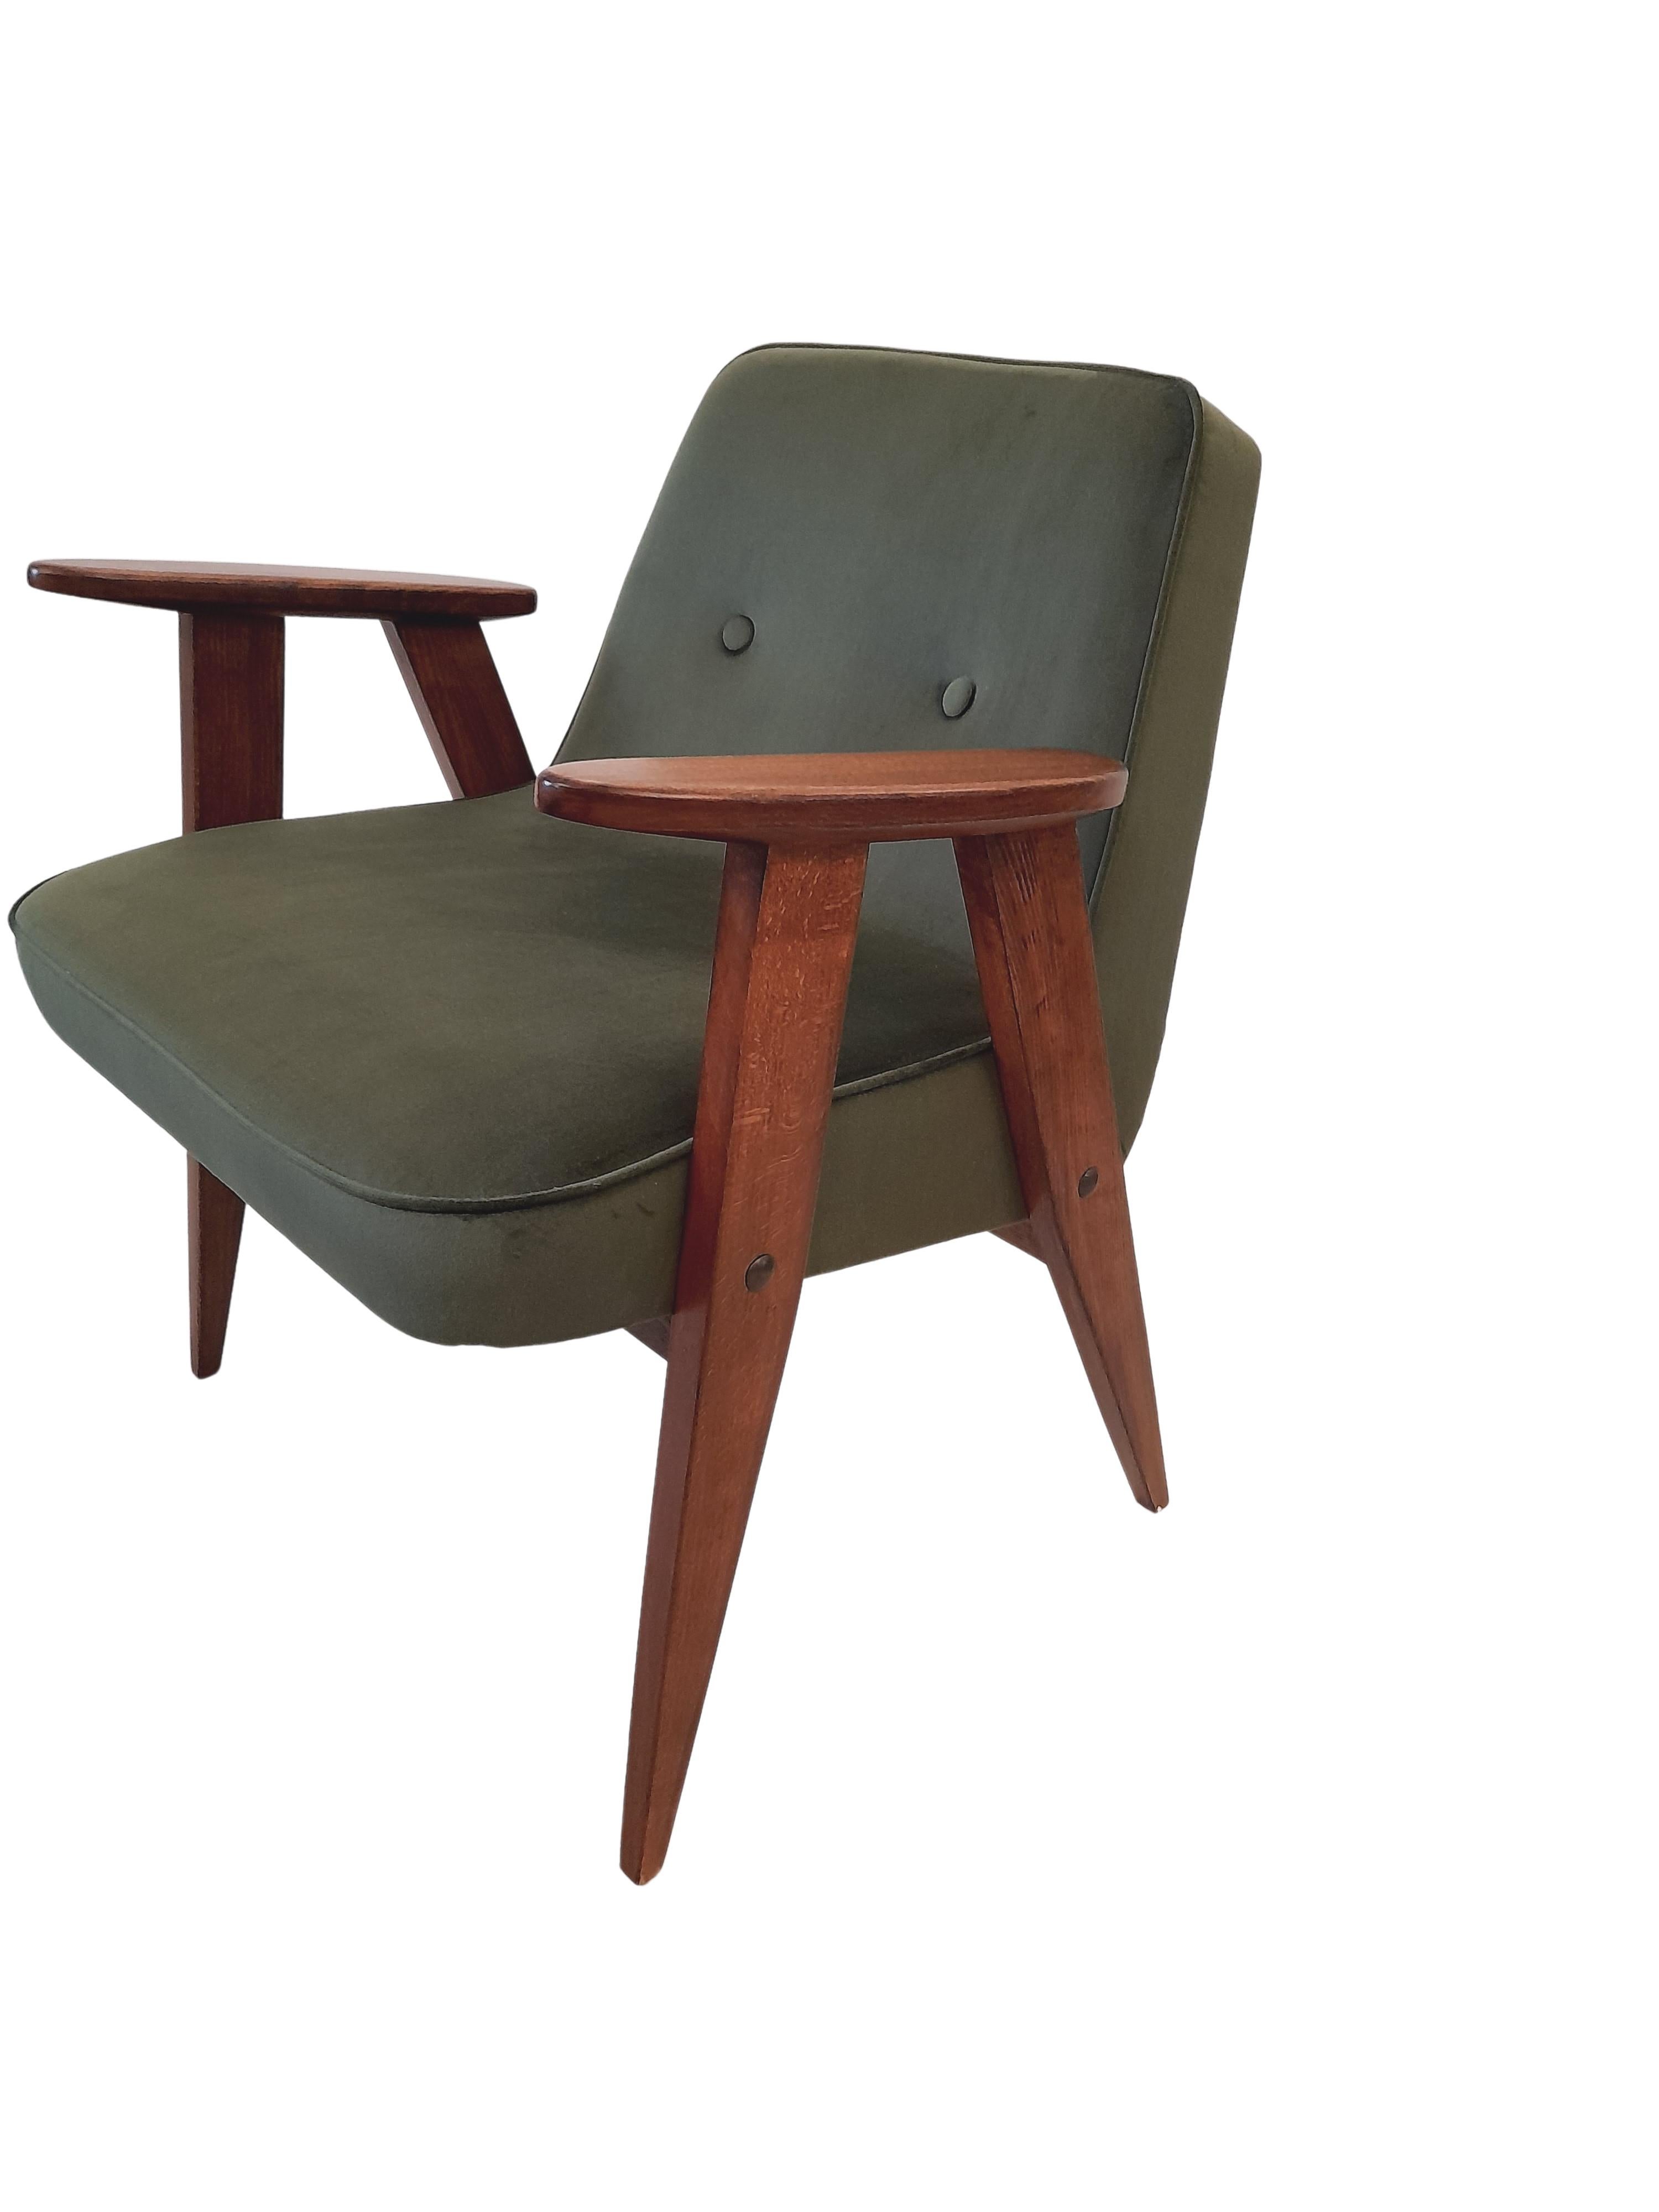 Sessel aus grünem Samt, Modell 366, von Józef Chierowski, 1960er Jahre (20. Jahrhundert)